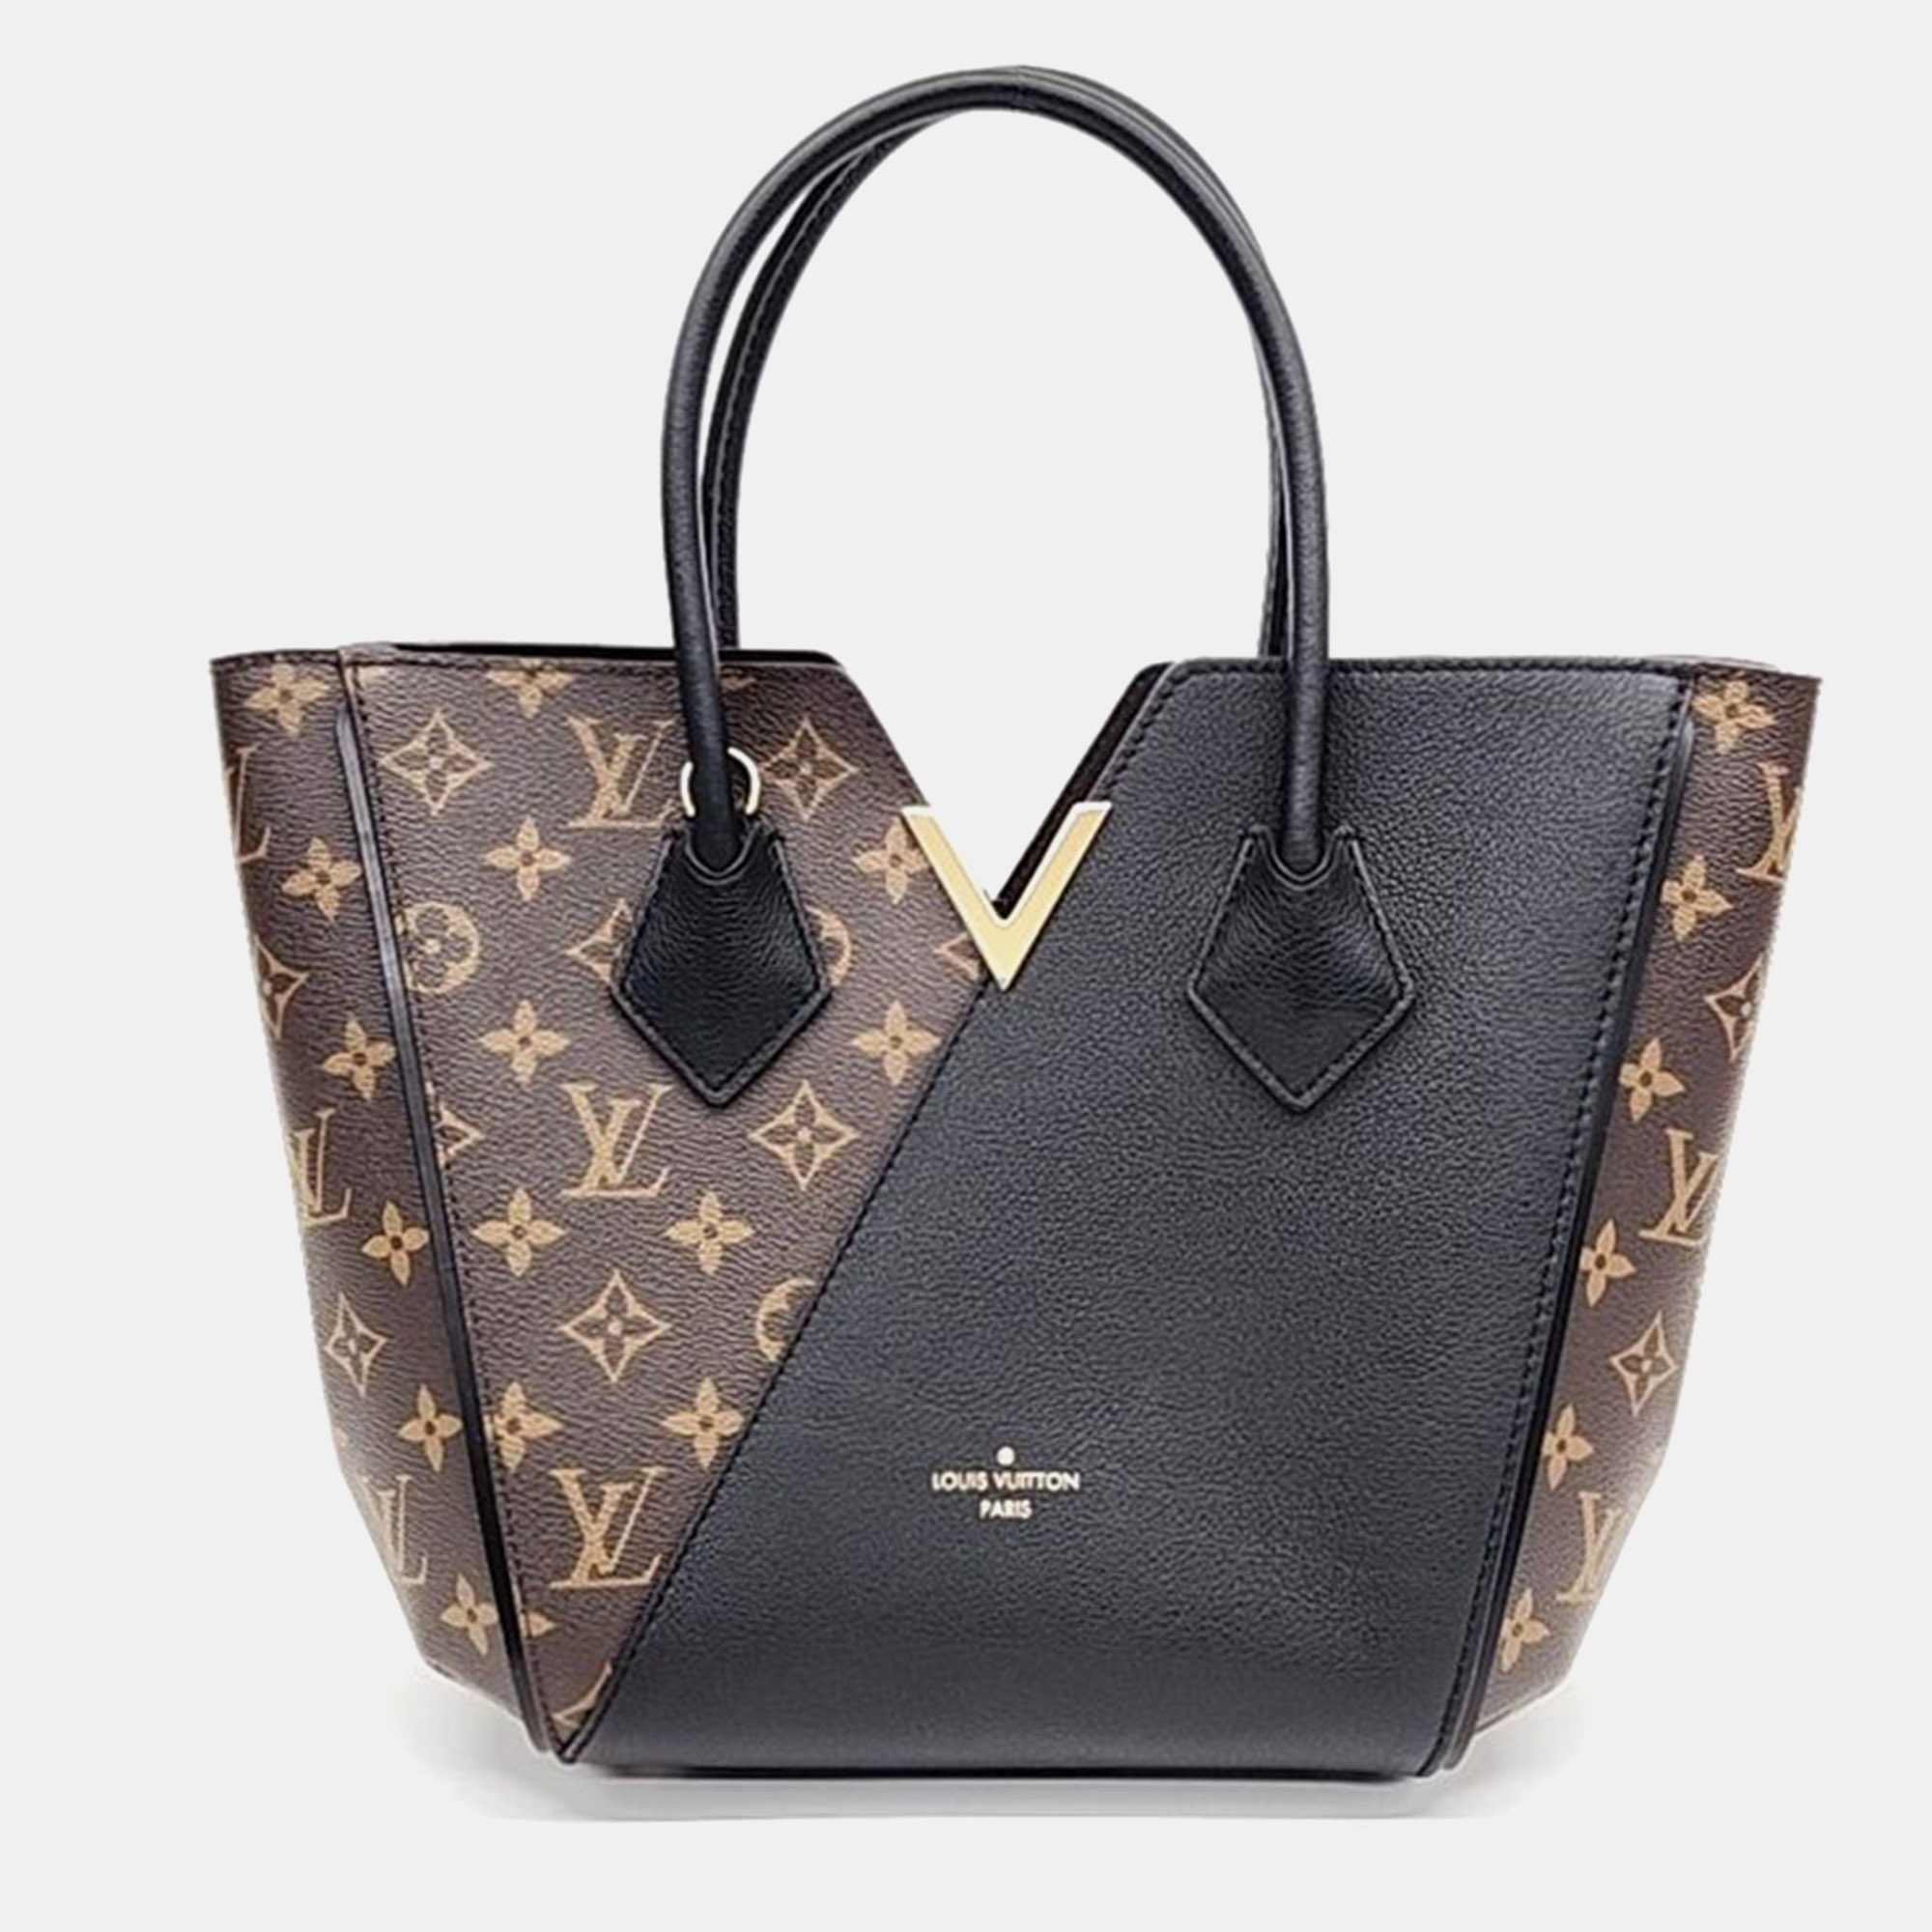 

Louis Vuitton Kimono PM M41855 Handbag, Black